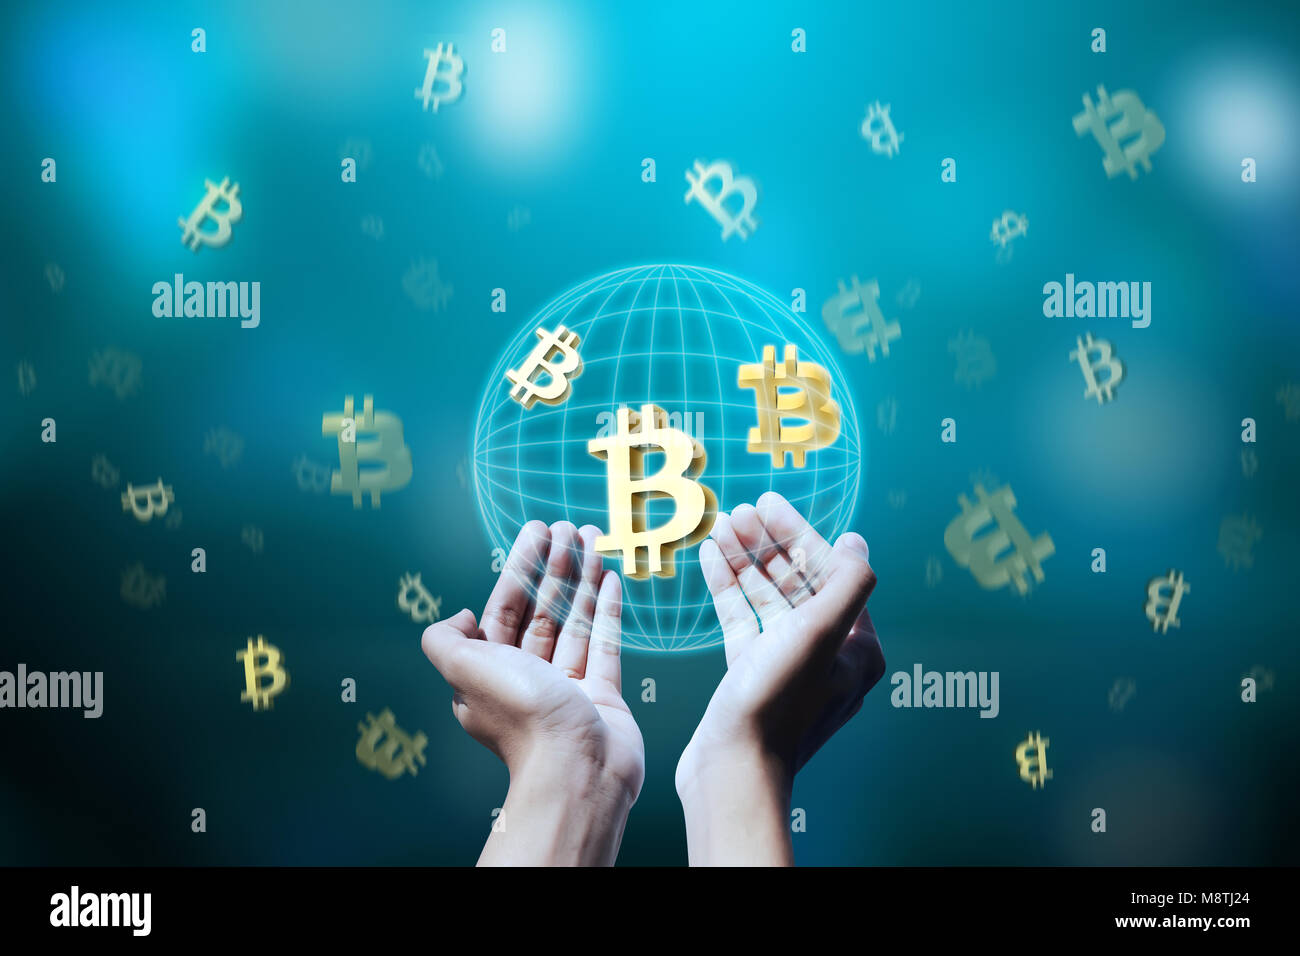 Personnes hand holding bitcoin système virtuel. Technologie concept Blockchain Banque D'Images